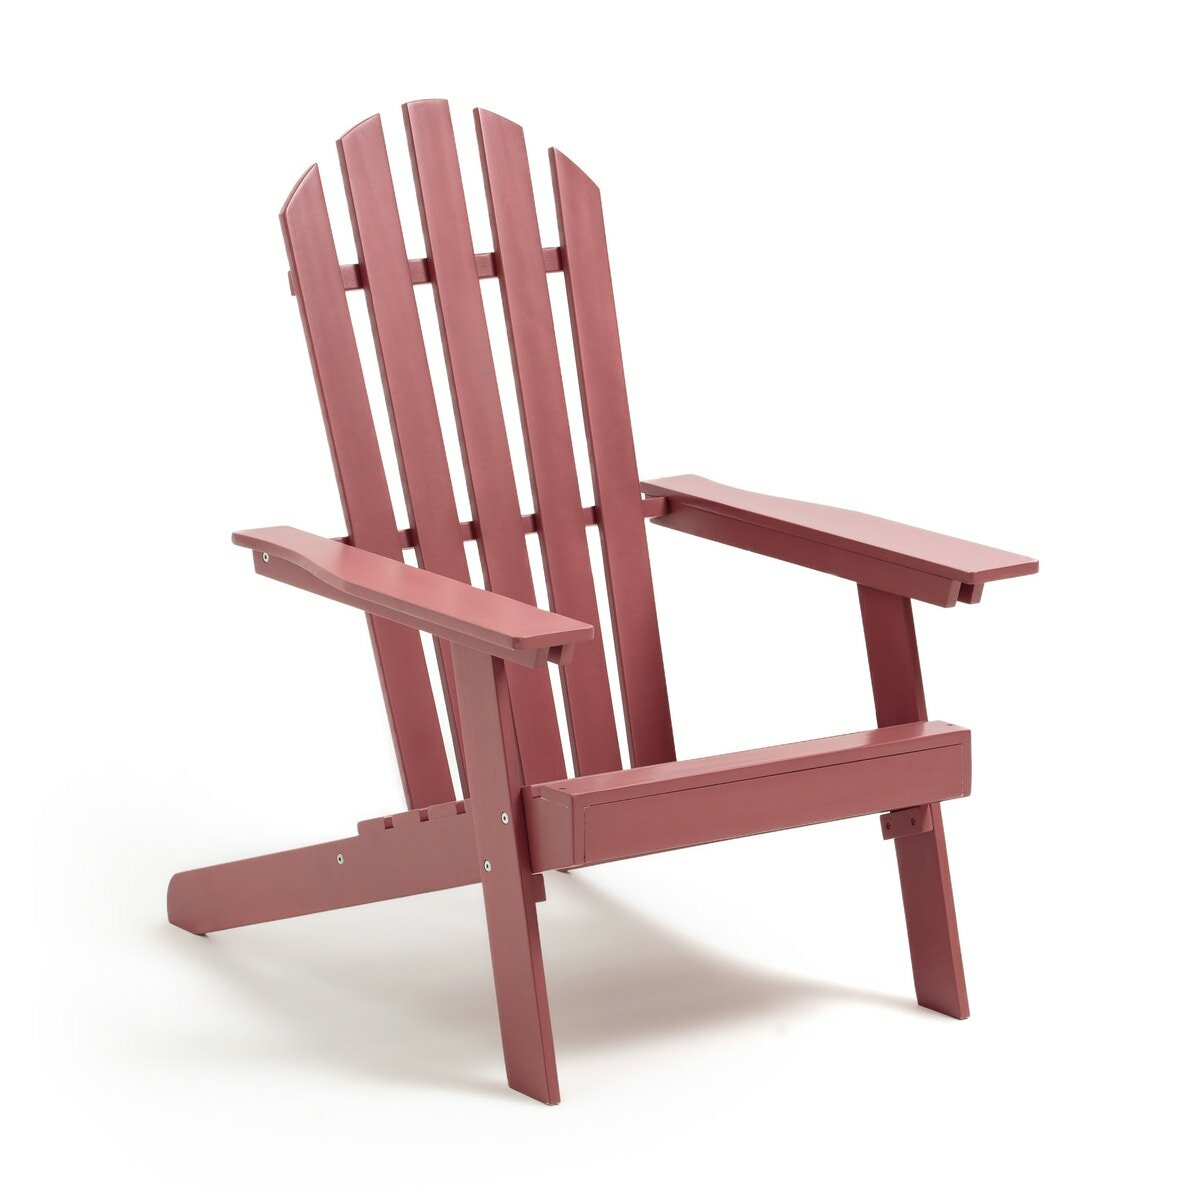 Стильное La Redoute Садовое кресло Adirondack положения гамма Zeda единый размер каштановый